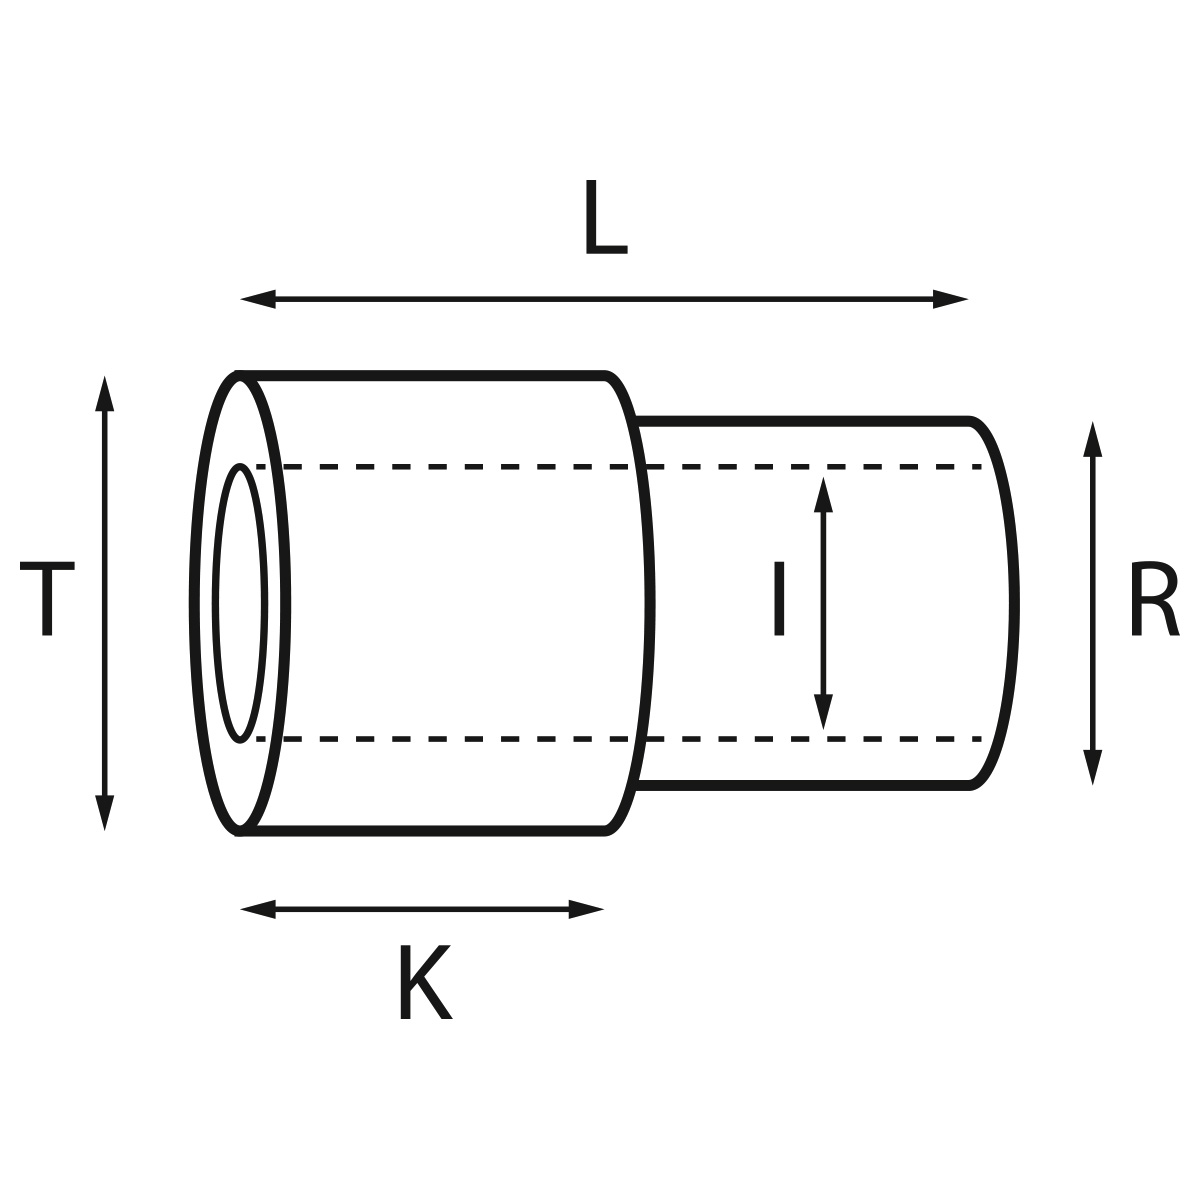 Gehäusetube Typ AS 13826, Tubus Ø 2 mm, Gesamtlänge 2,4 mm, für wasserdichte Kronen